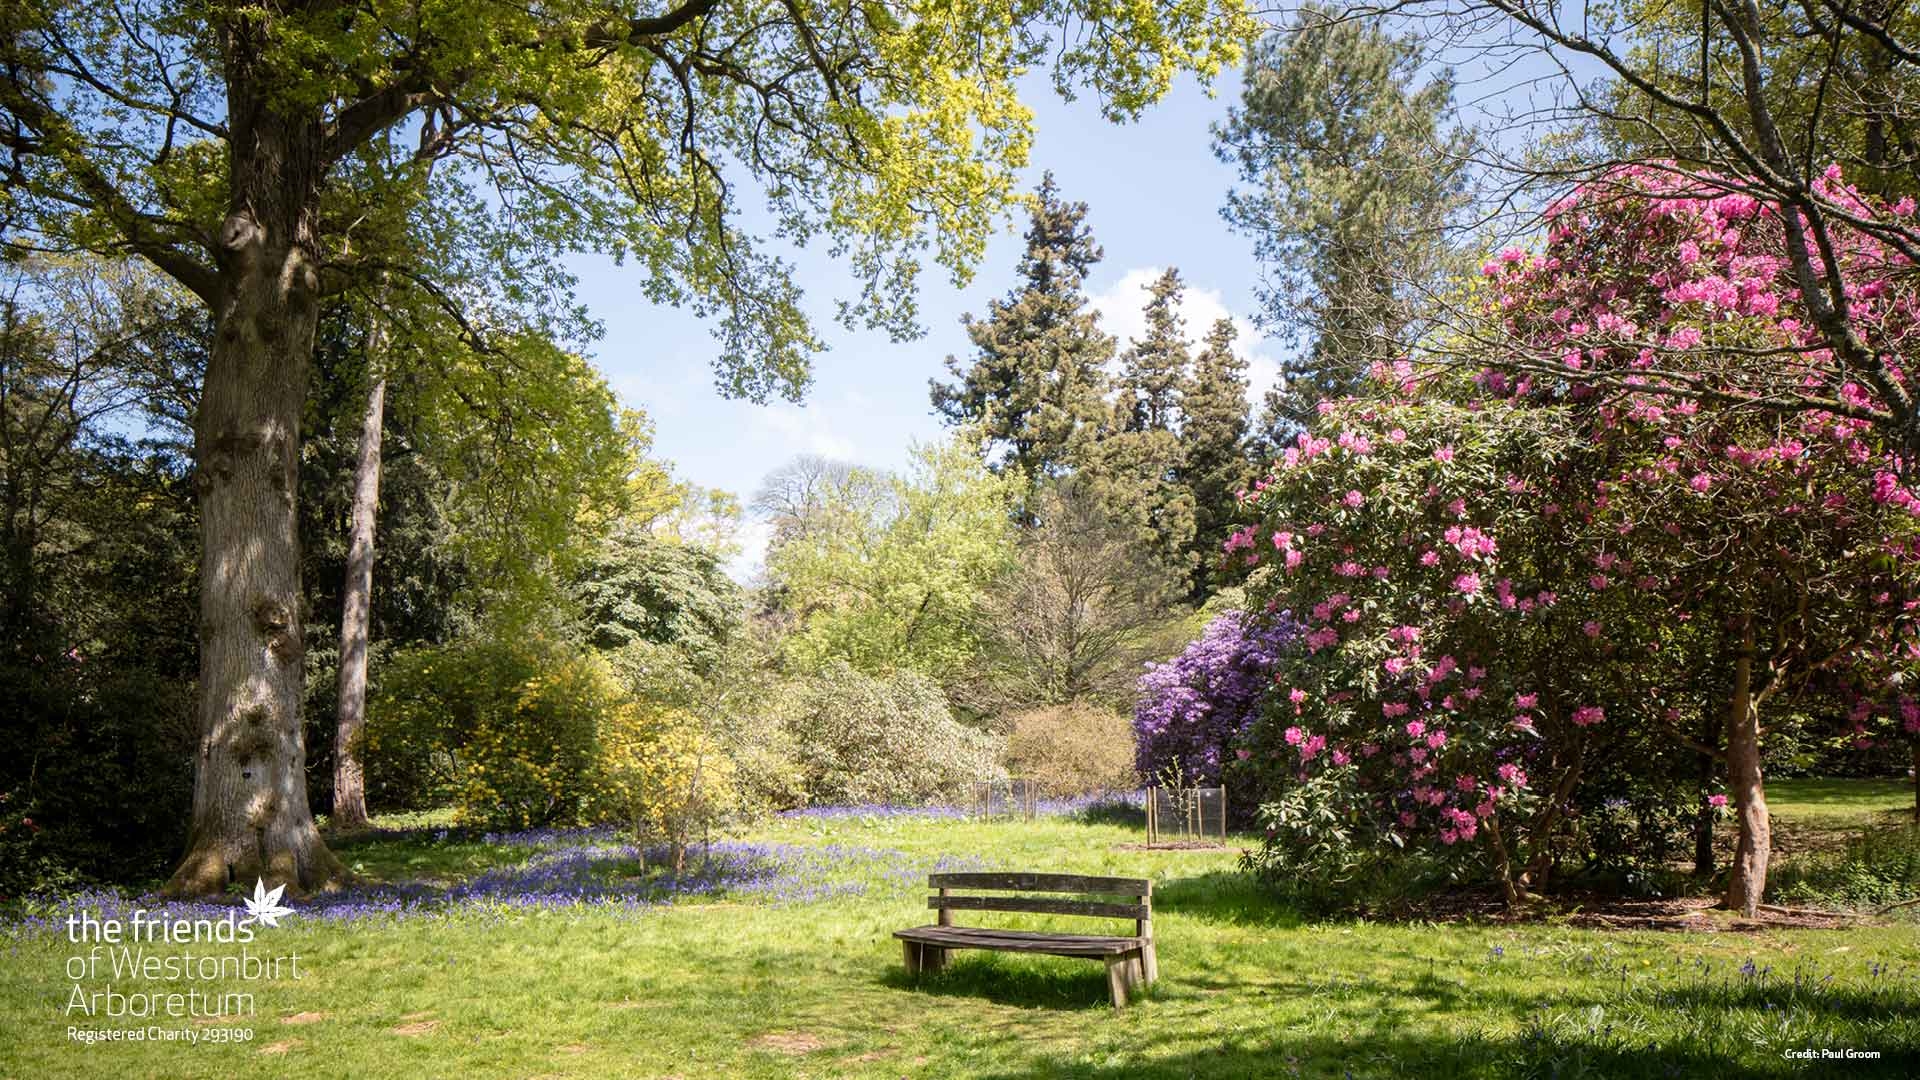 A spring scene at Westonbirt Arboretum